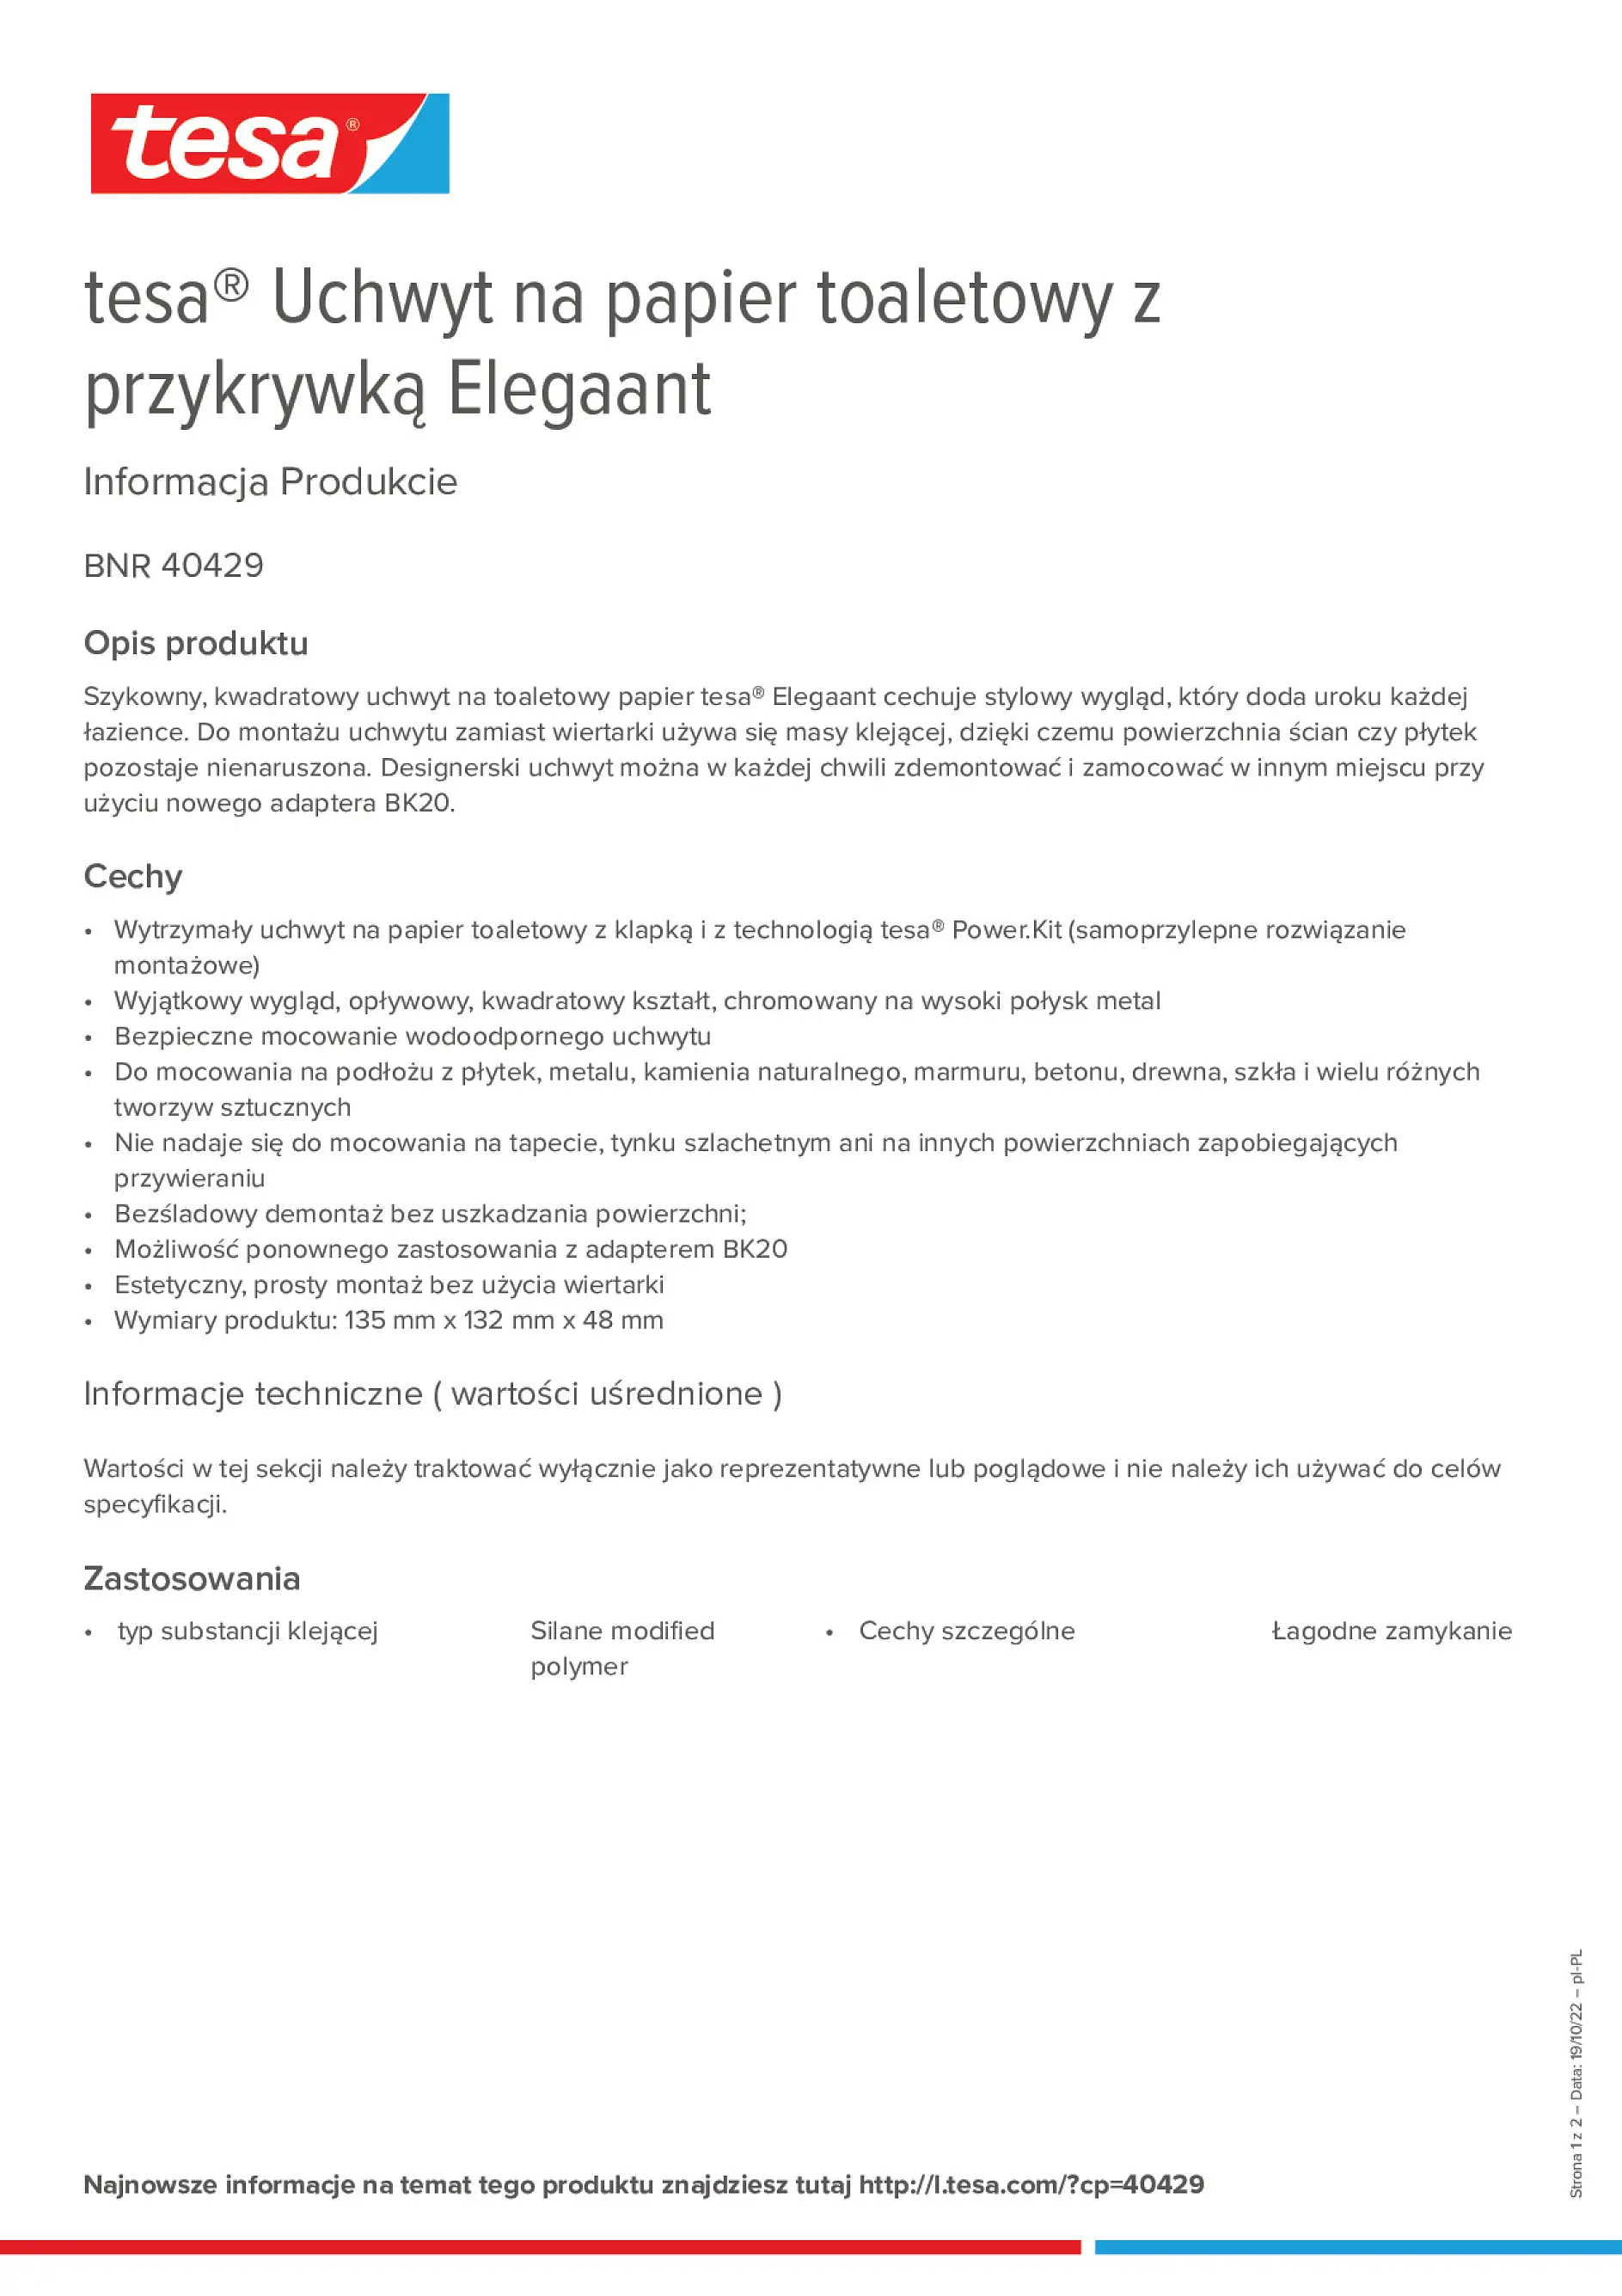 tesa-Premium-white-Elegaant-40429_pl-PL